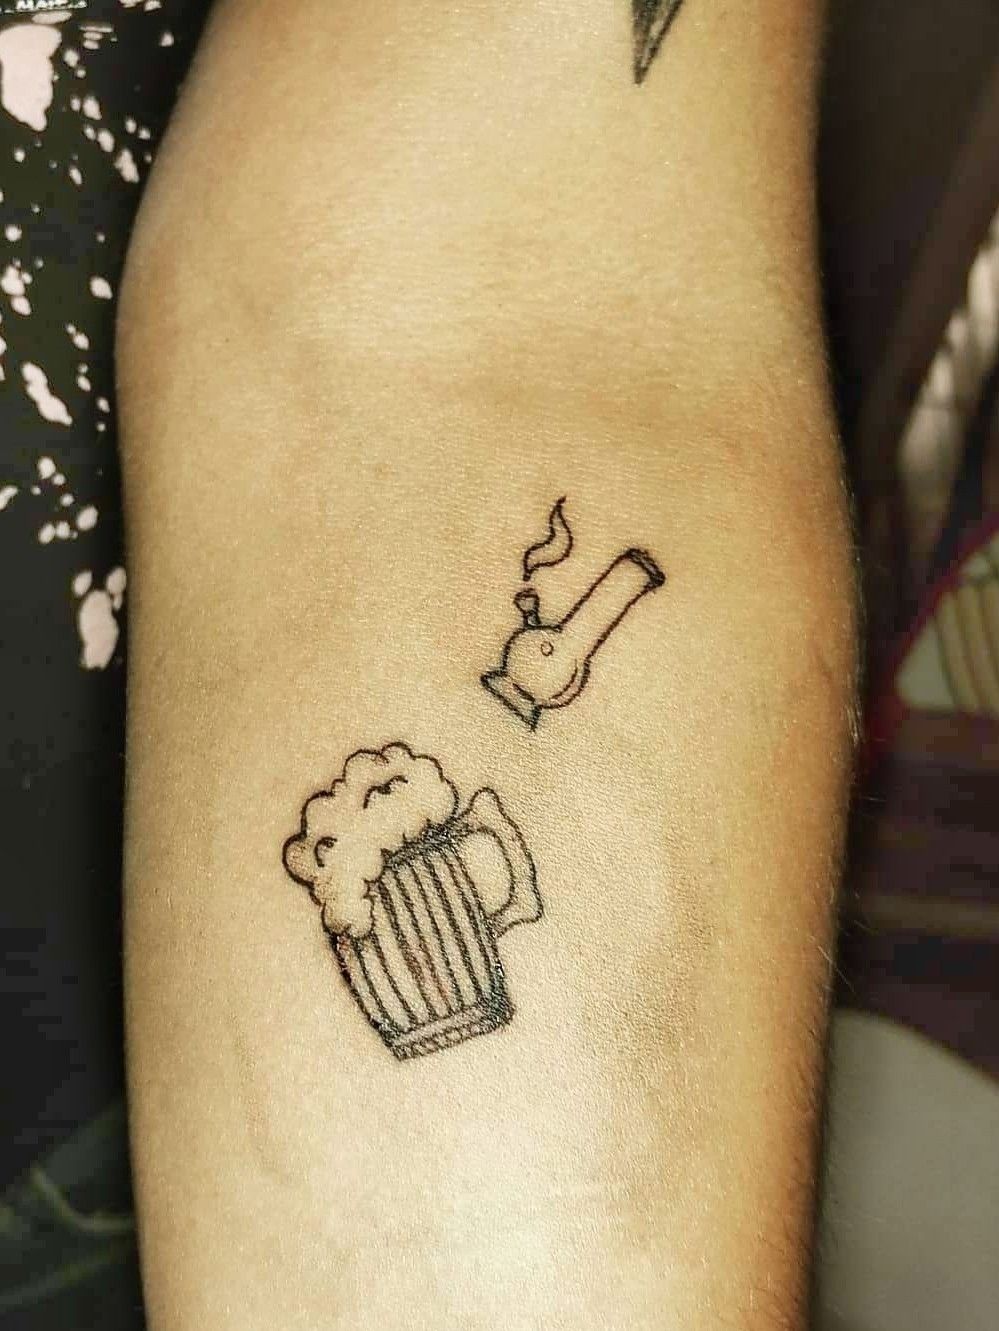 Tattoo uploaded by Henrik_tattoo • Beer 2017 🍻#tattooartist #tattodoapp # tattoo #newschooltattoo #beer #DuffTattoo #liketattoo • Tattoodo